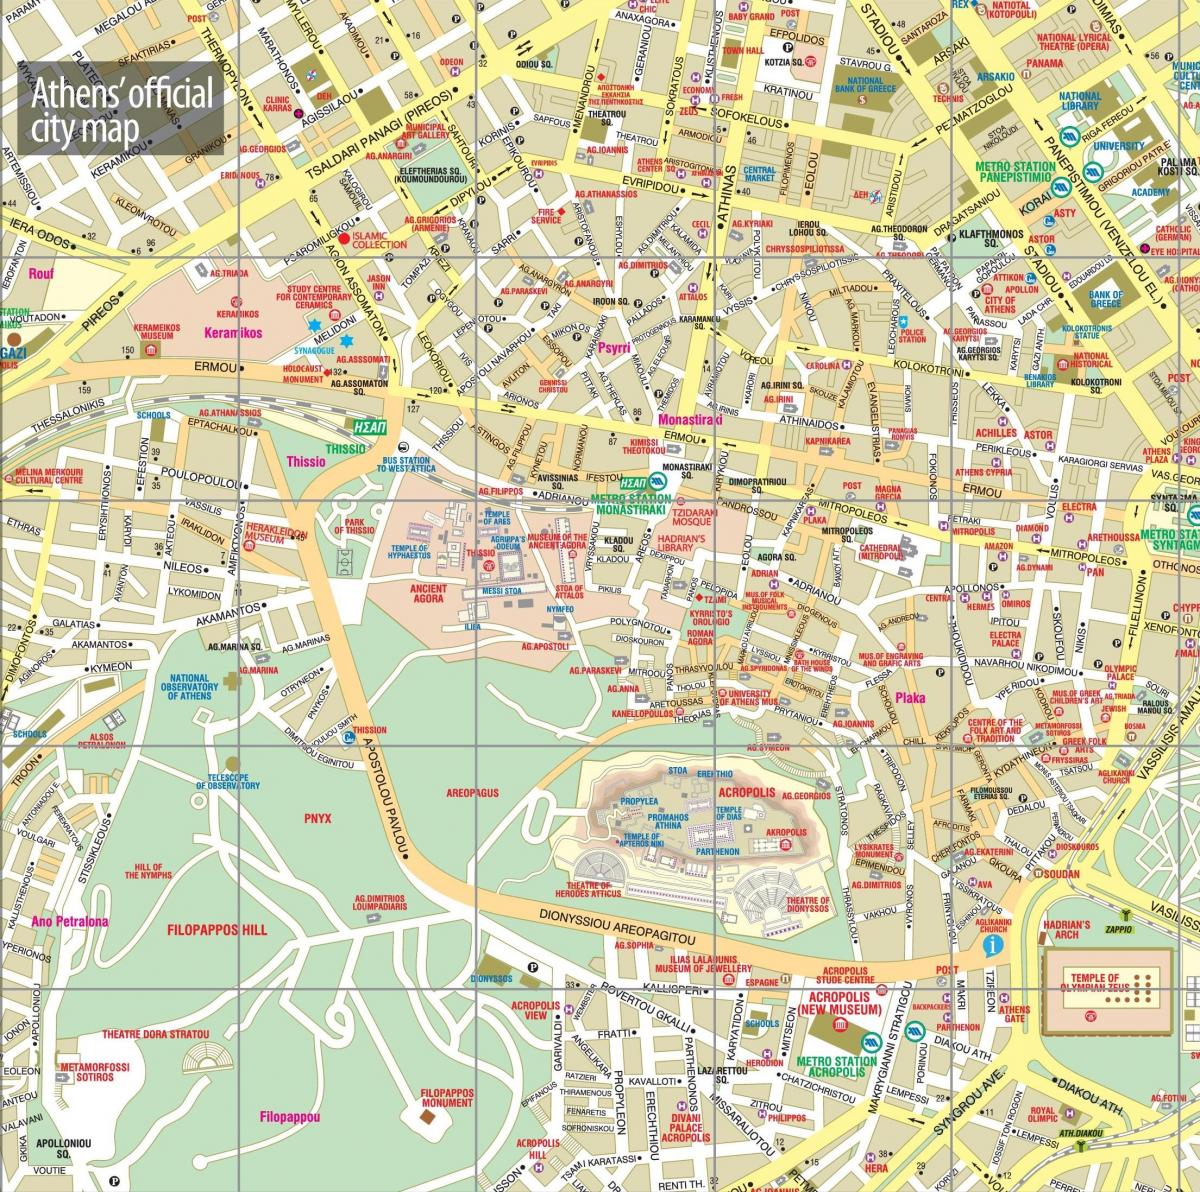 Mappa del centro di Atene